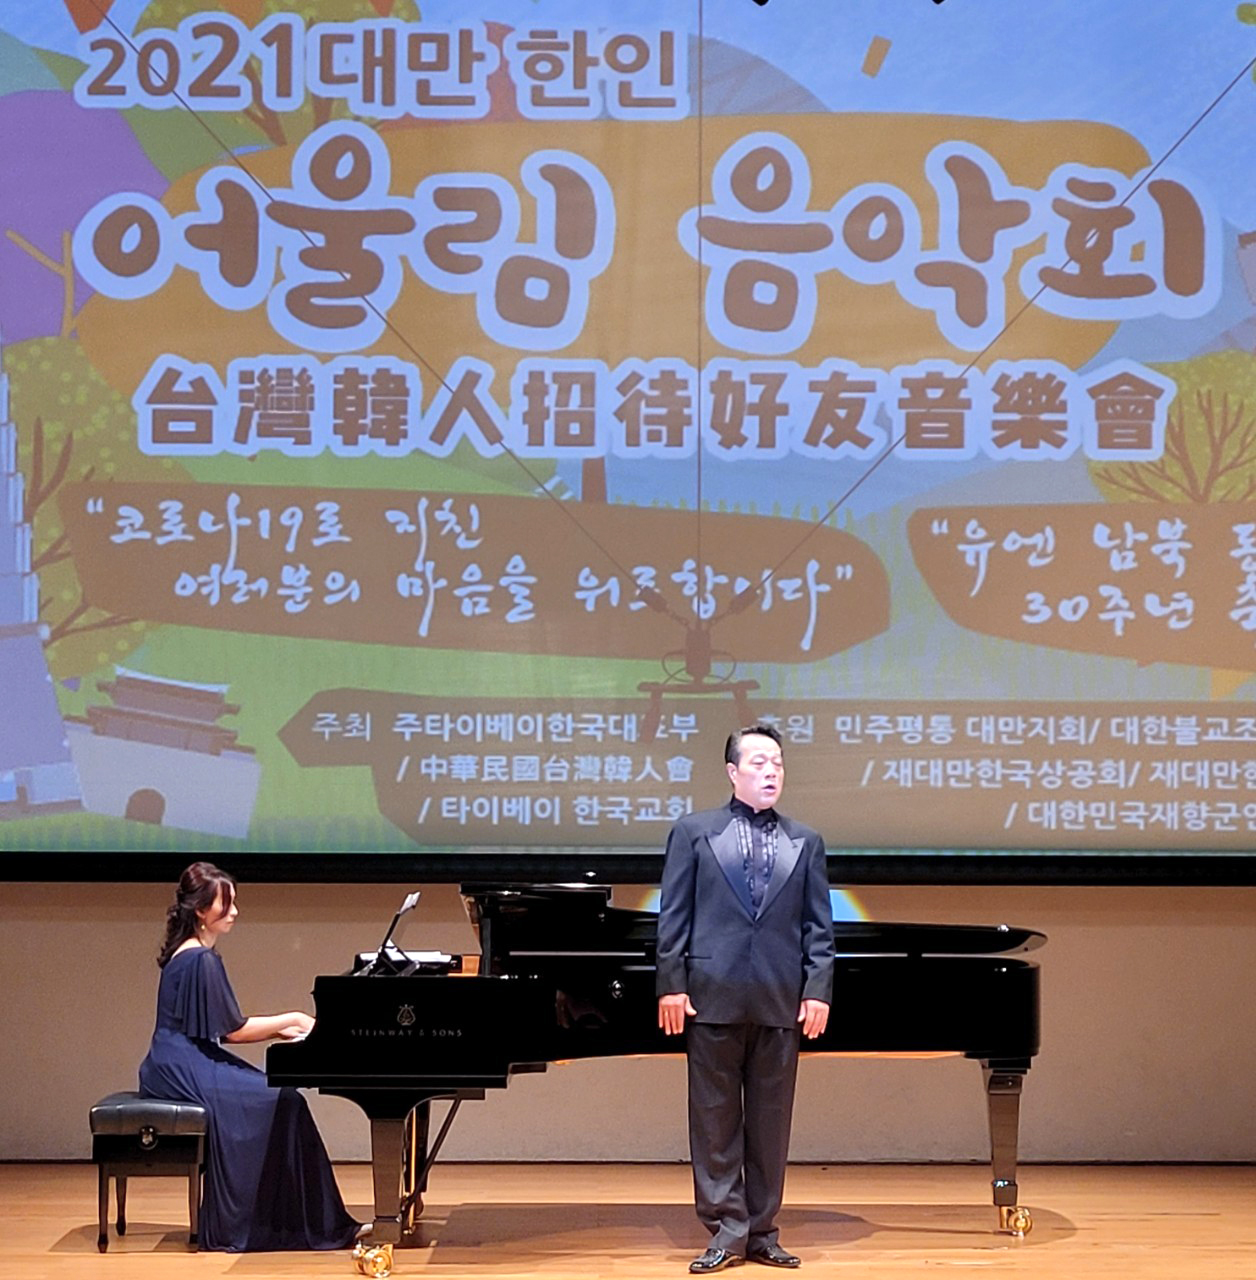 2021 대만 한인 어울림 음악회가 지난 4월20일 타이페이, 성품공연장에서 열렸다.[사진제공=중화민국 대만한인회]